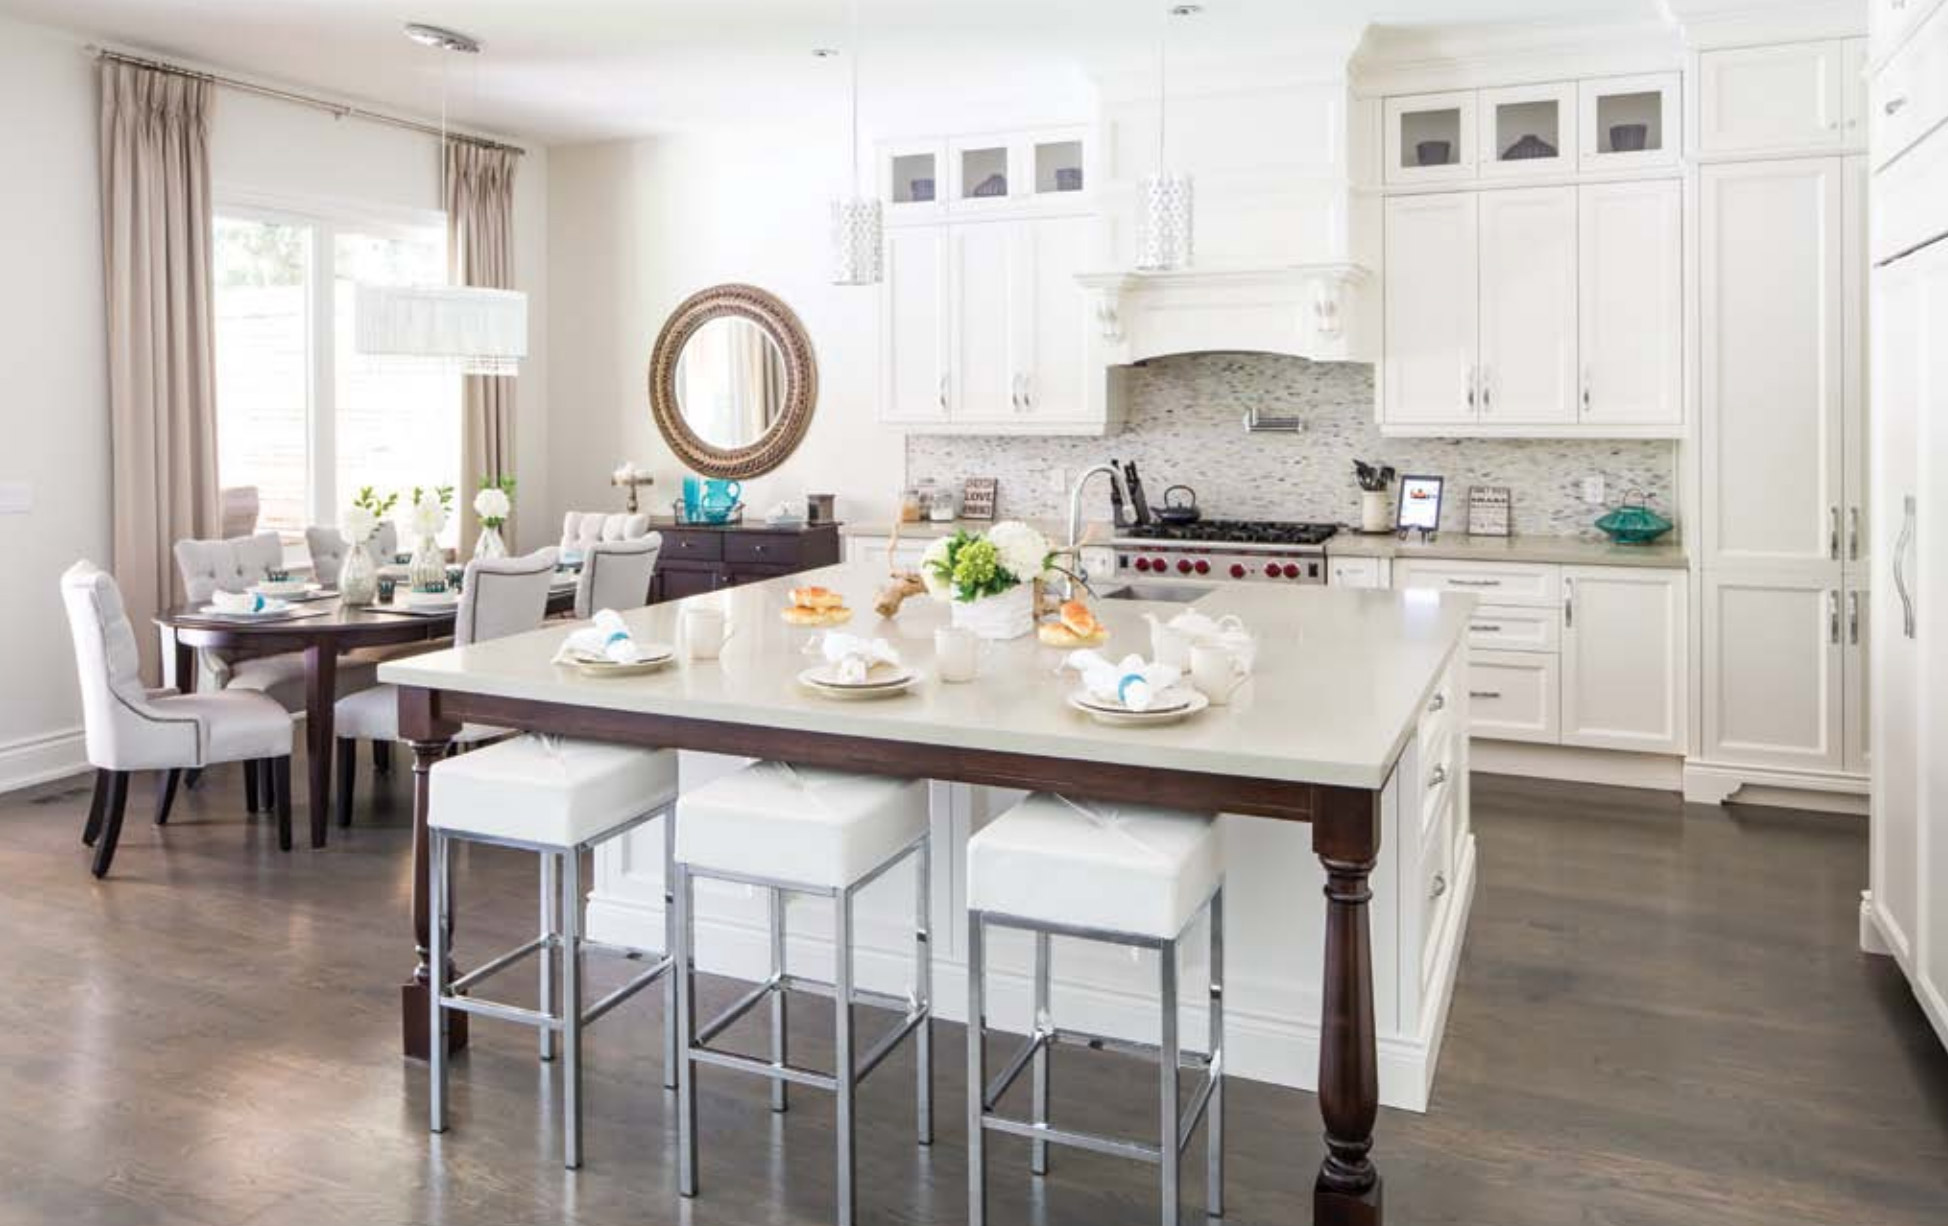 White kitchen with hardwood floor, tile backsplash and large island.